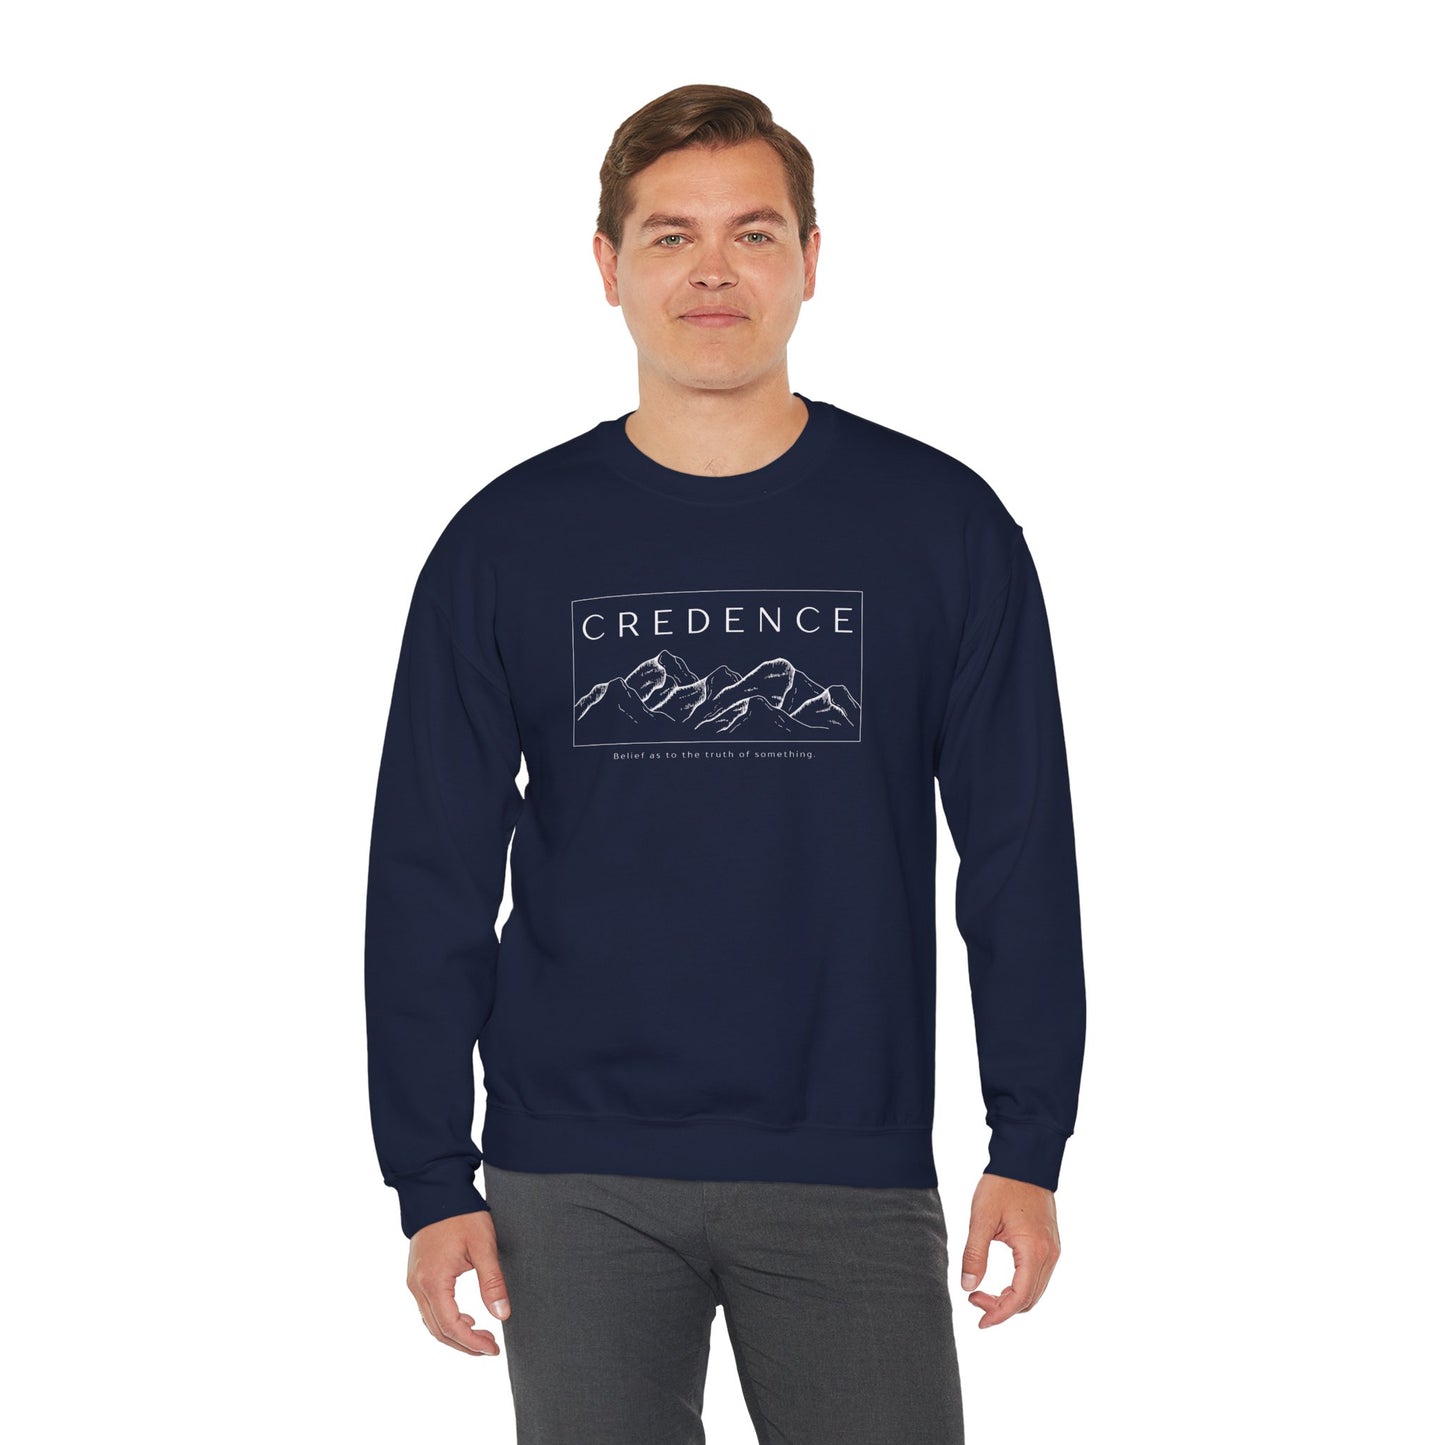 Credence Crewneck Sweatshirt Pullover